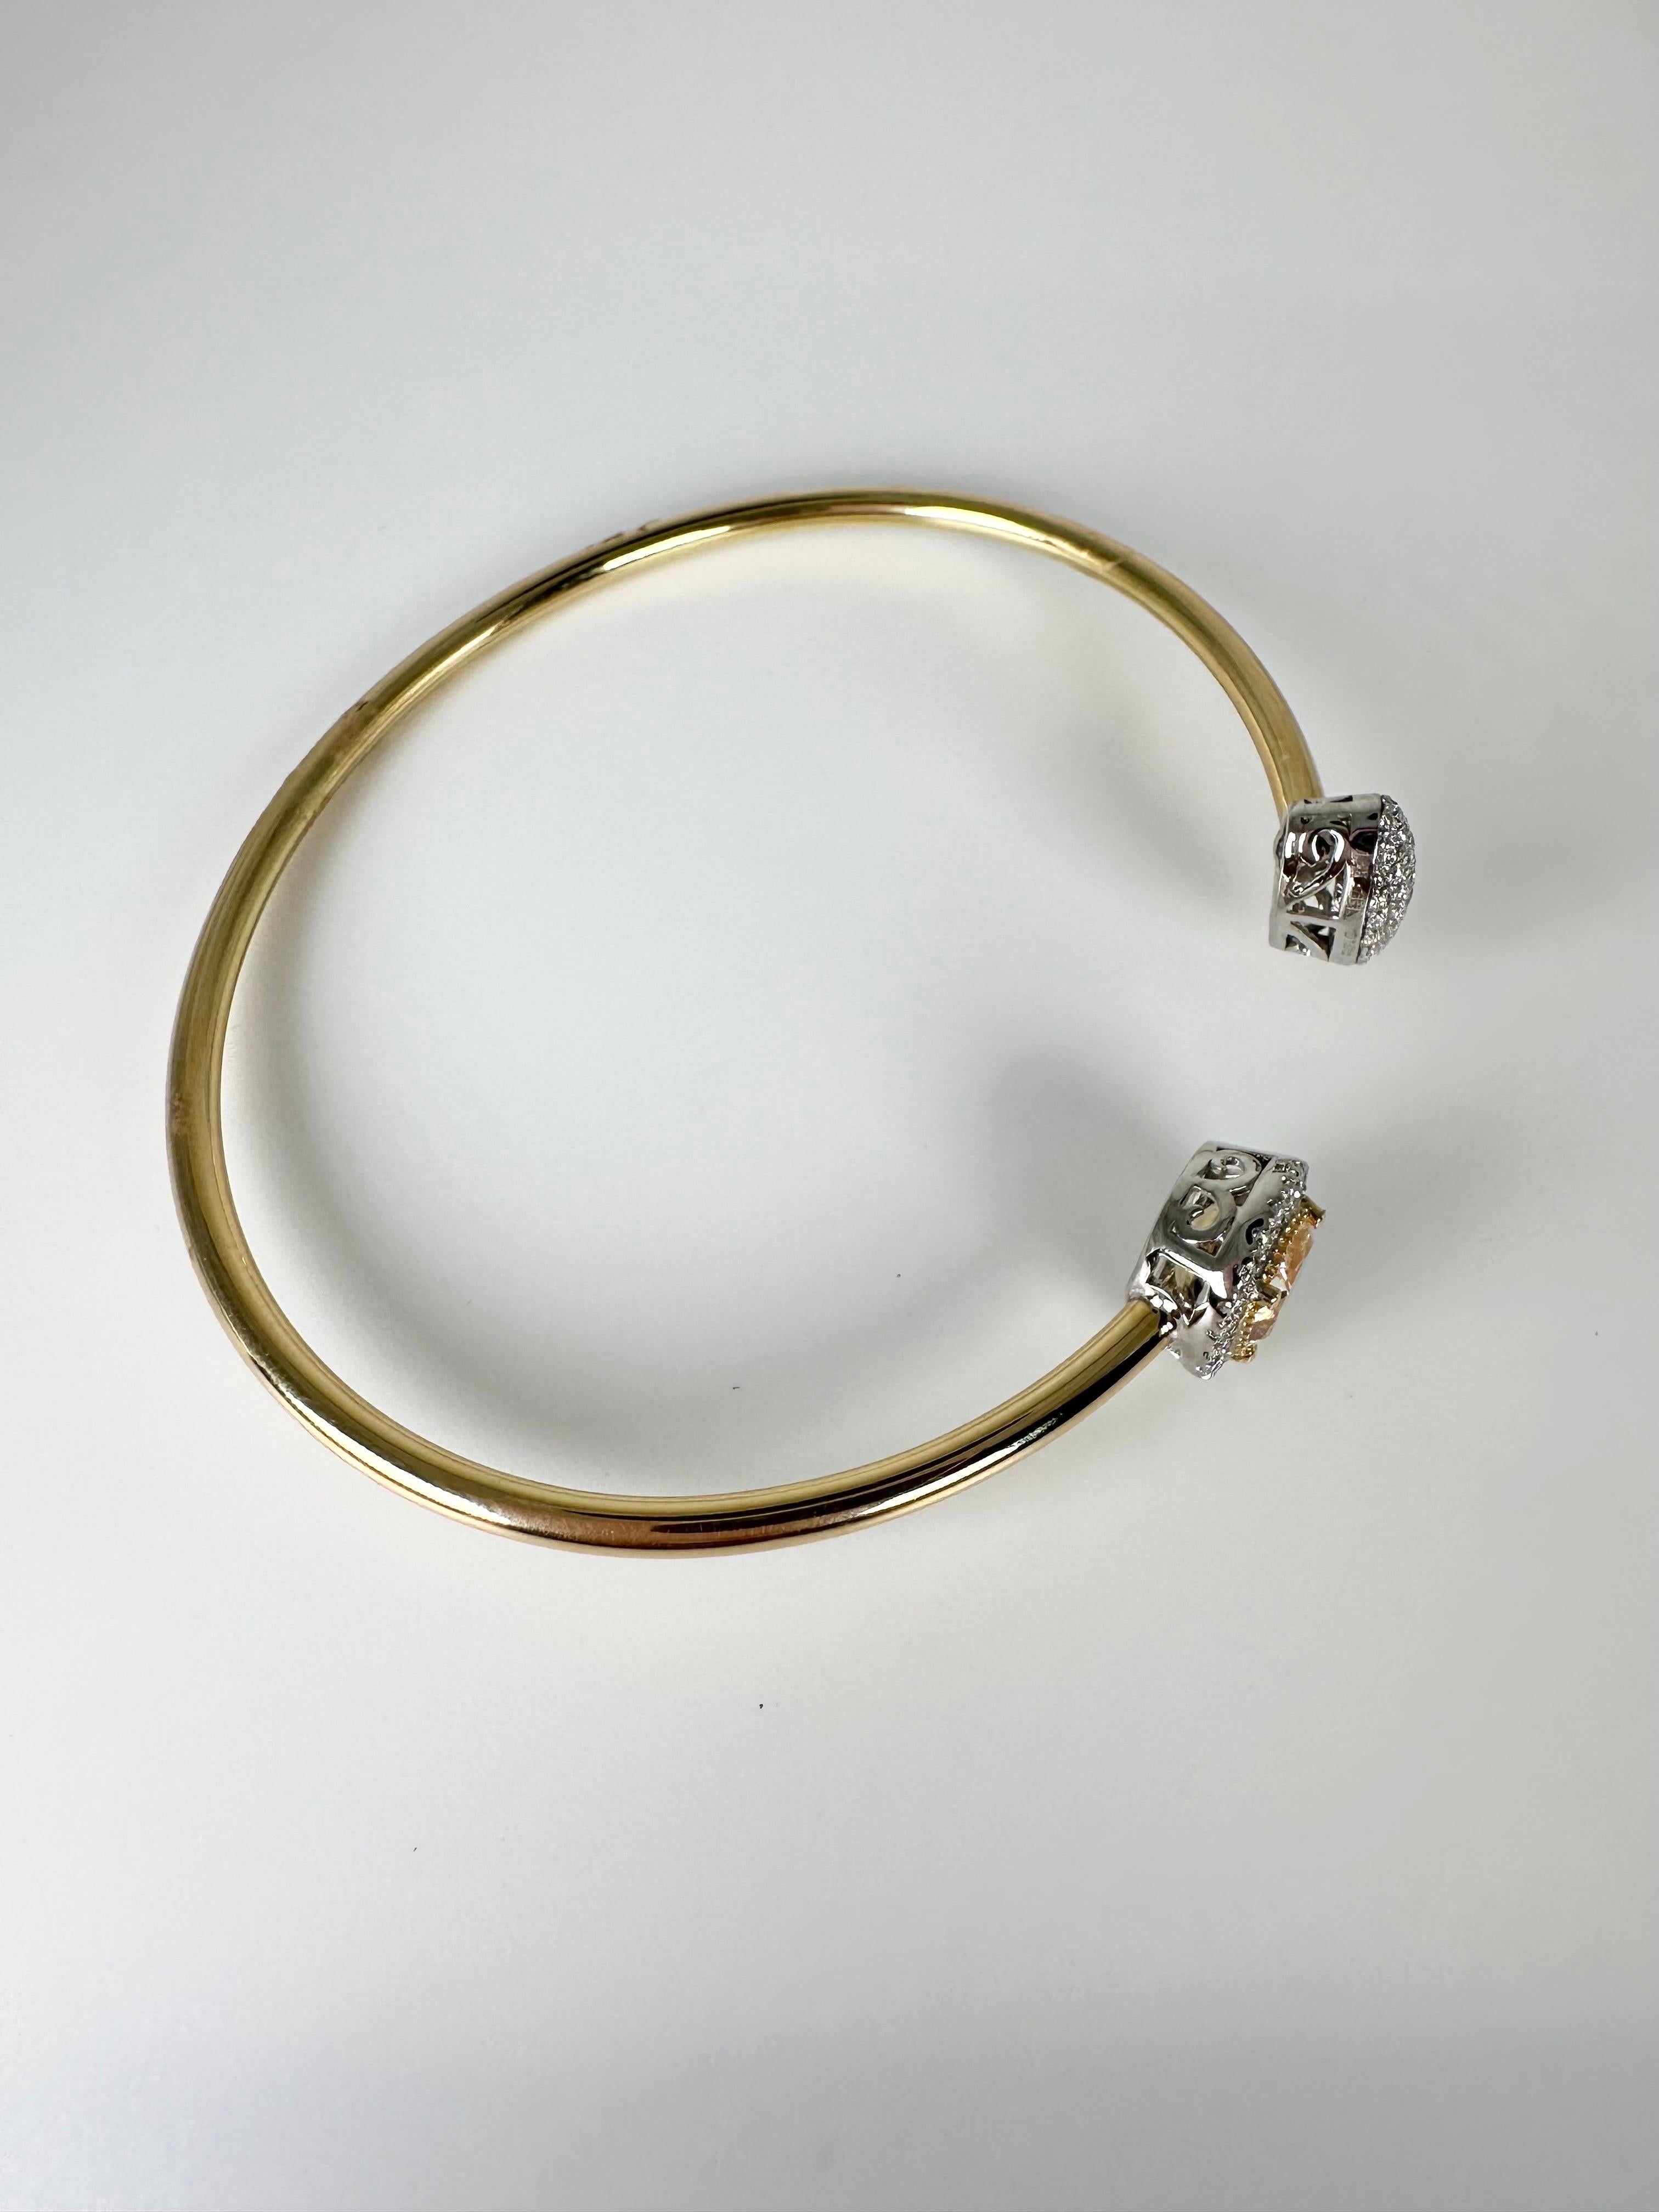 Une pièce très rare, bracelet bangle à tube flexible avec un grand diamant jaune fantaisie, bracelet luxueux avec un style moderne en or jaune 18KT ! WOW est le seul mot qui me vient à l'esprit, non seulement il est confortable mais il est également